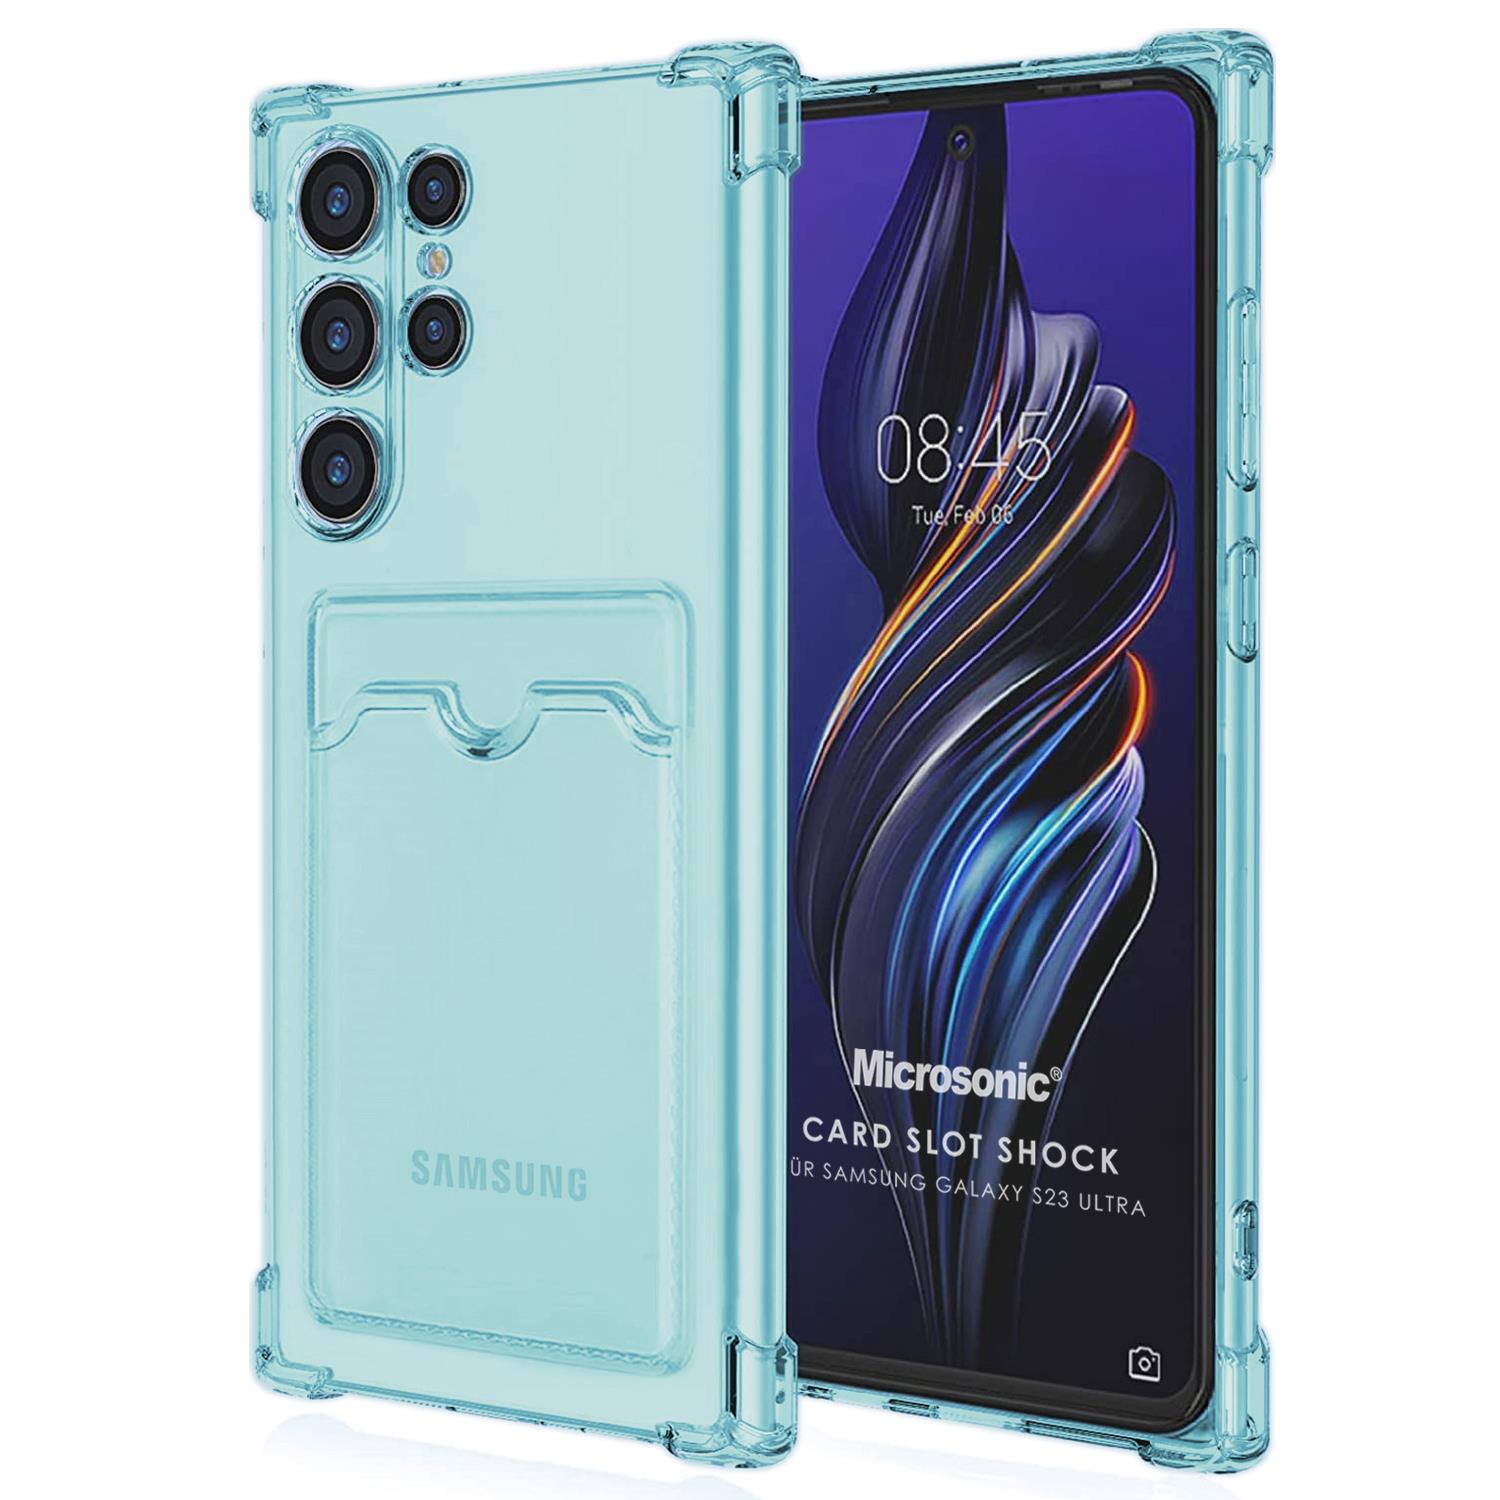 Microsonic Samsung Galaxy S23 Ultra Card Slot Shock Kılıf Mavi